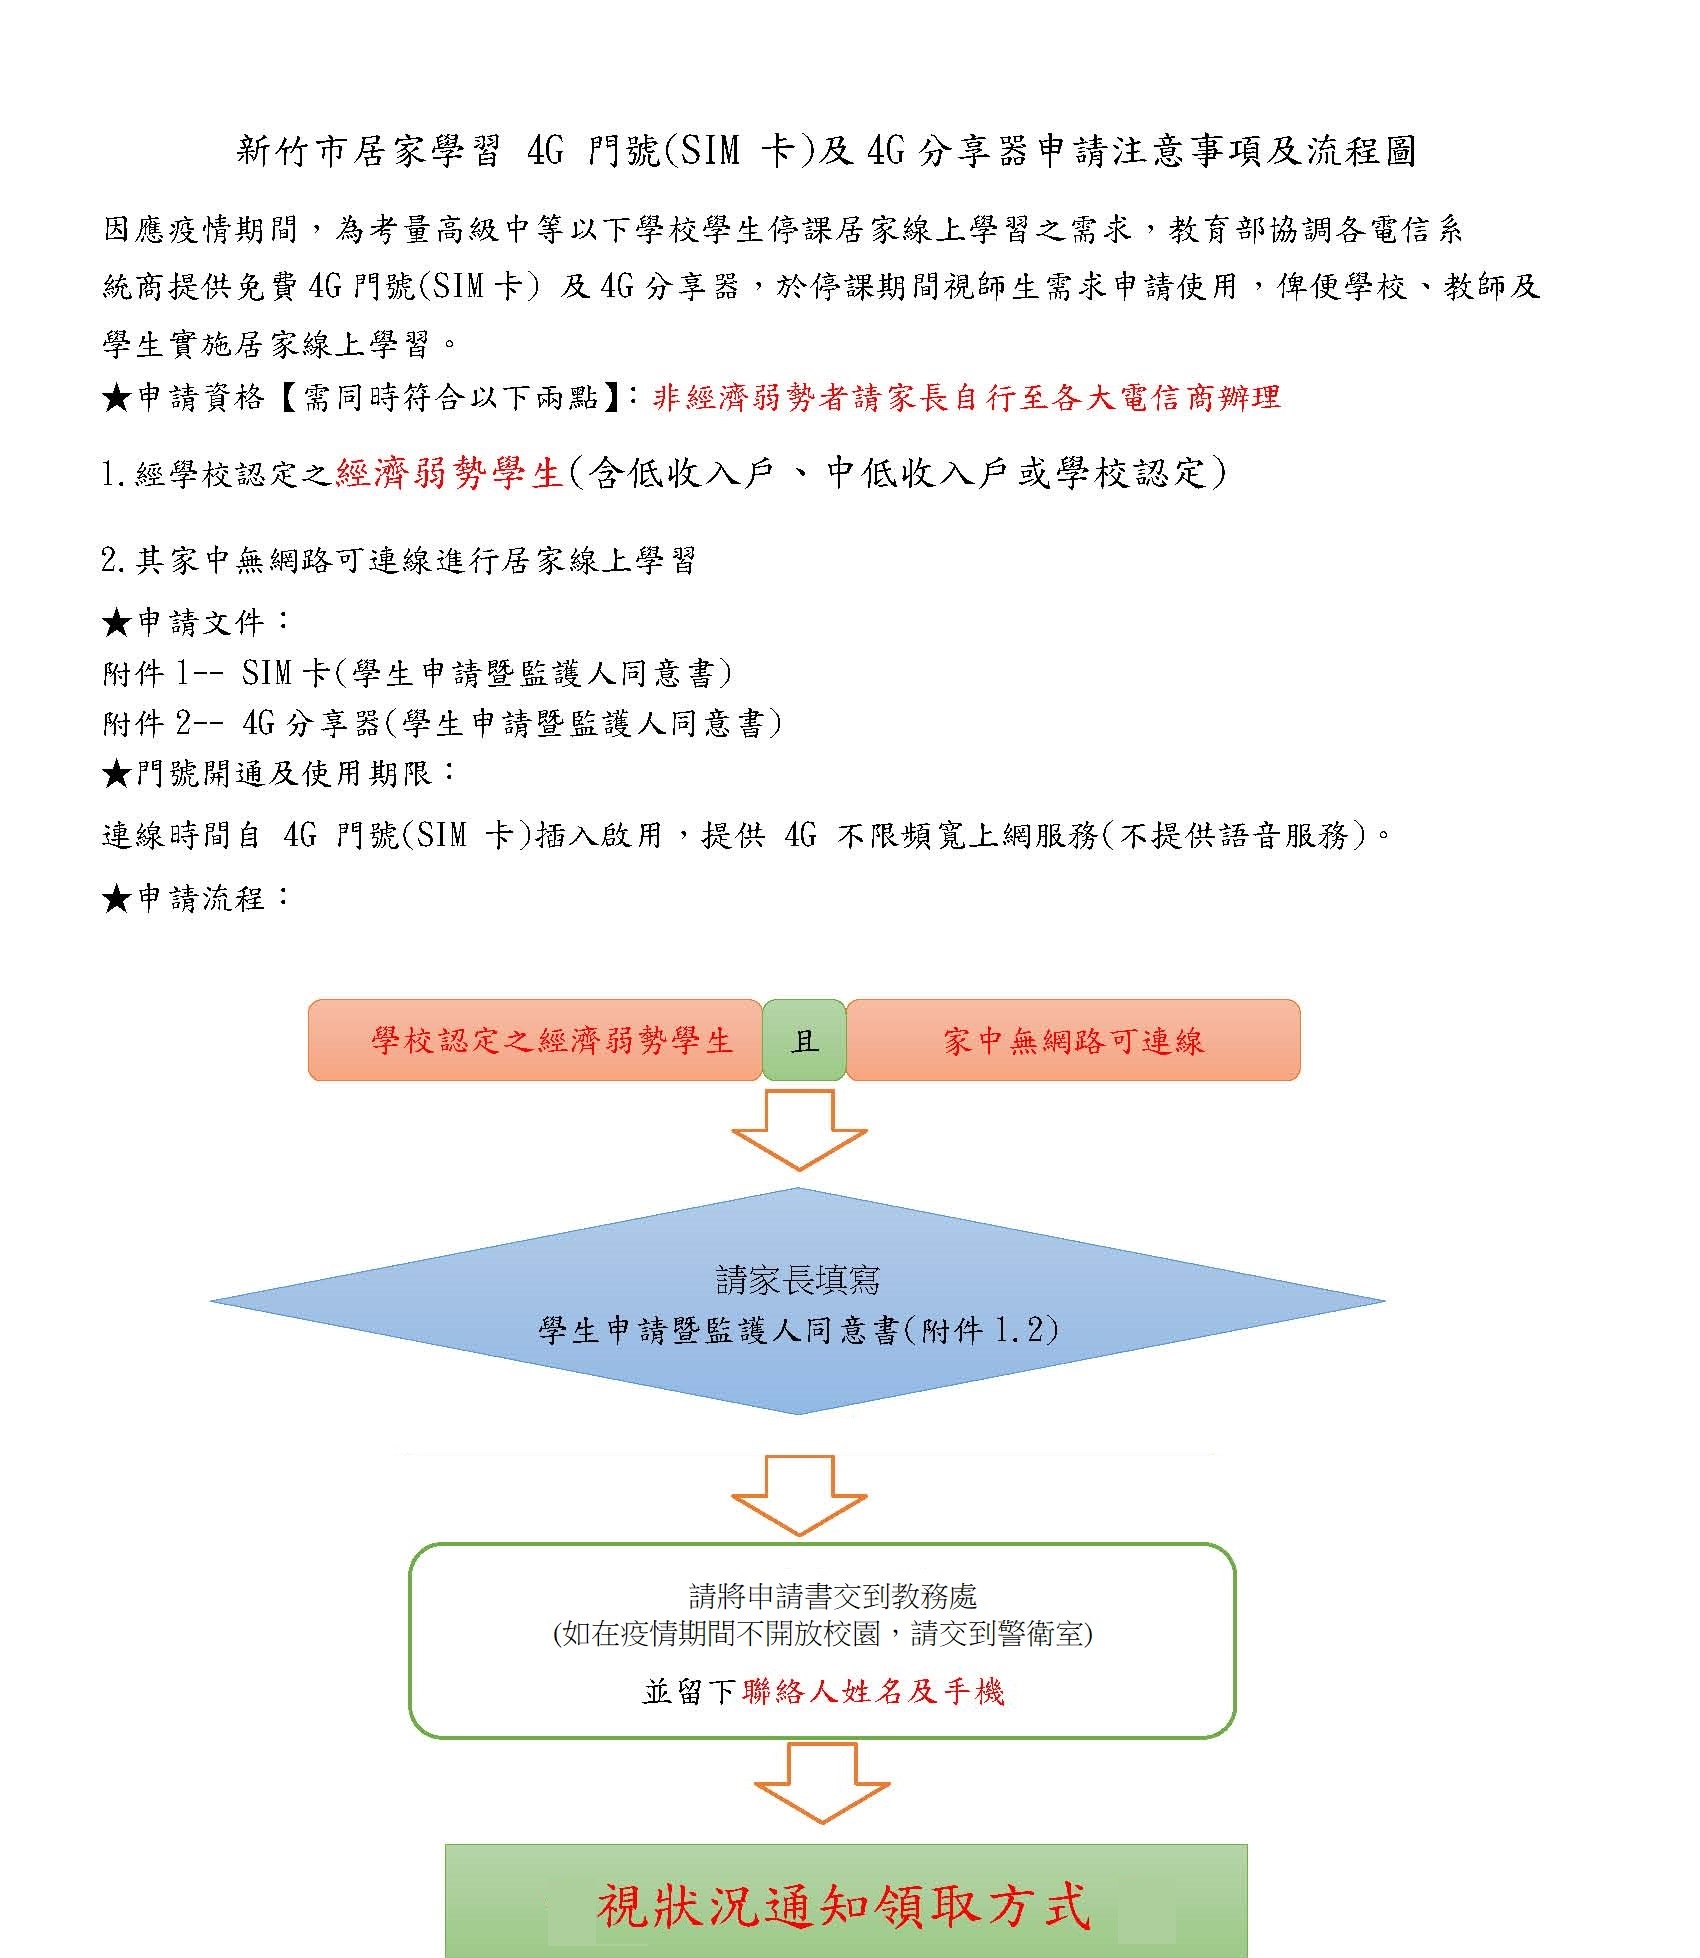 新竹市居家學習(SIM 卡)及 4G分享器申請注意事項及流程圖